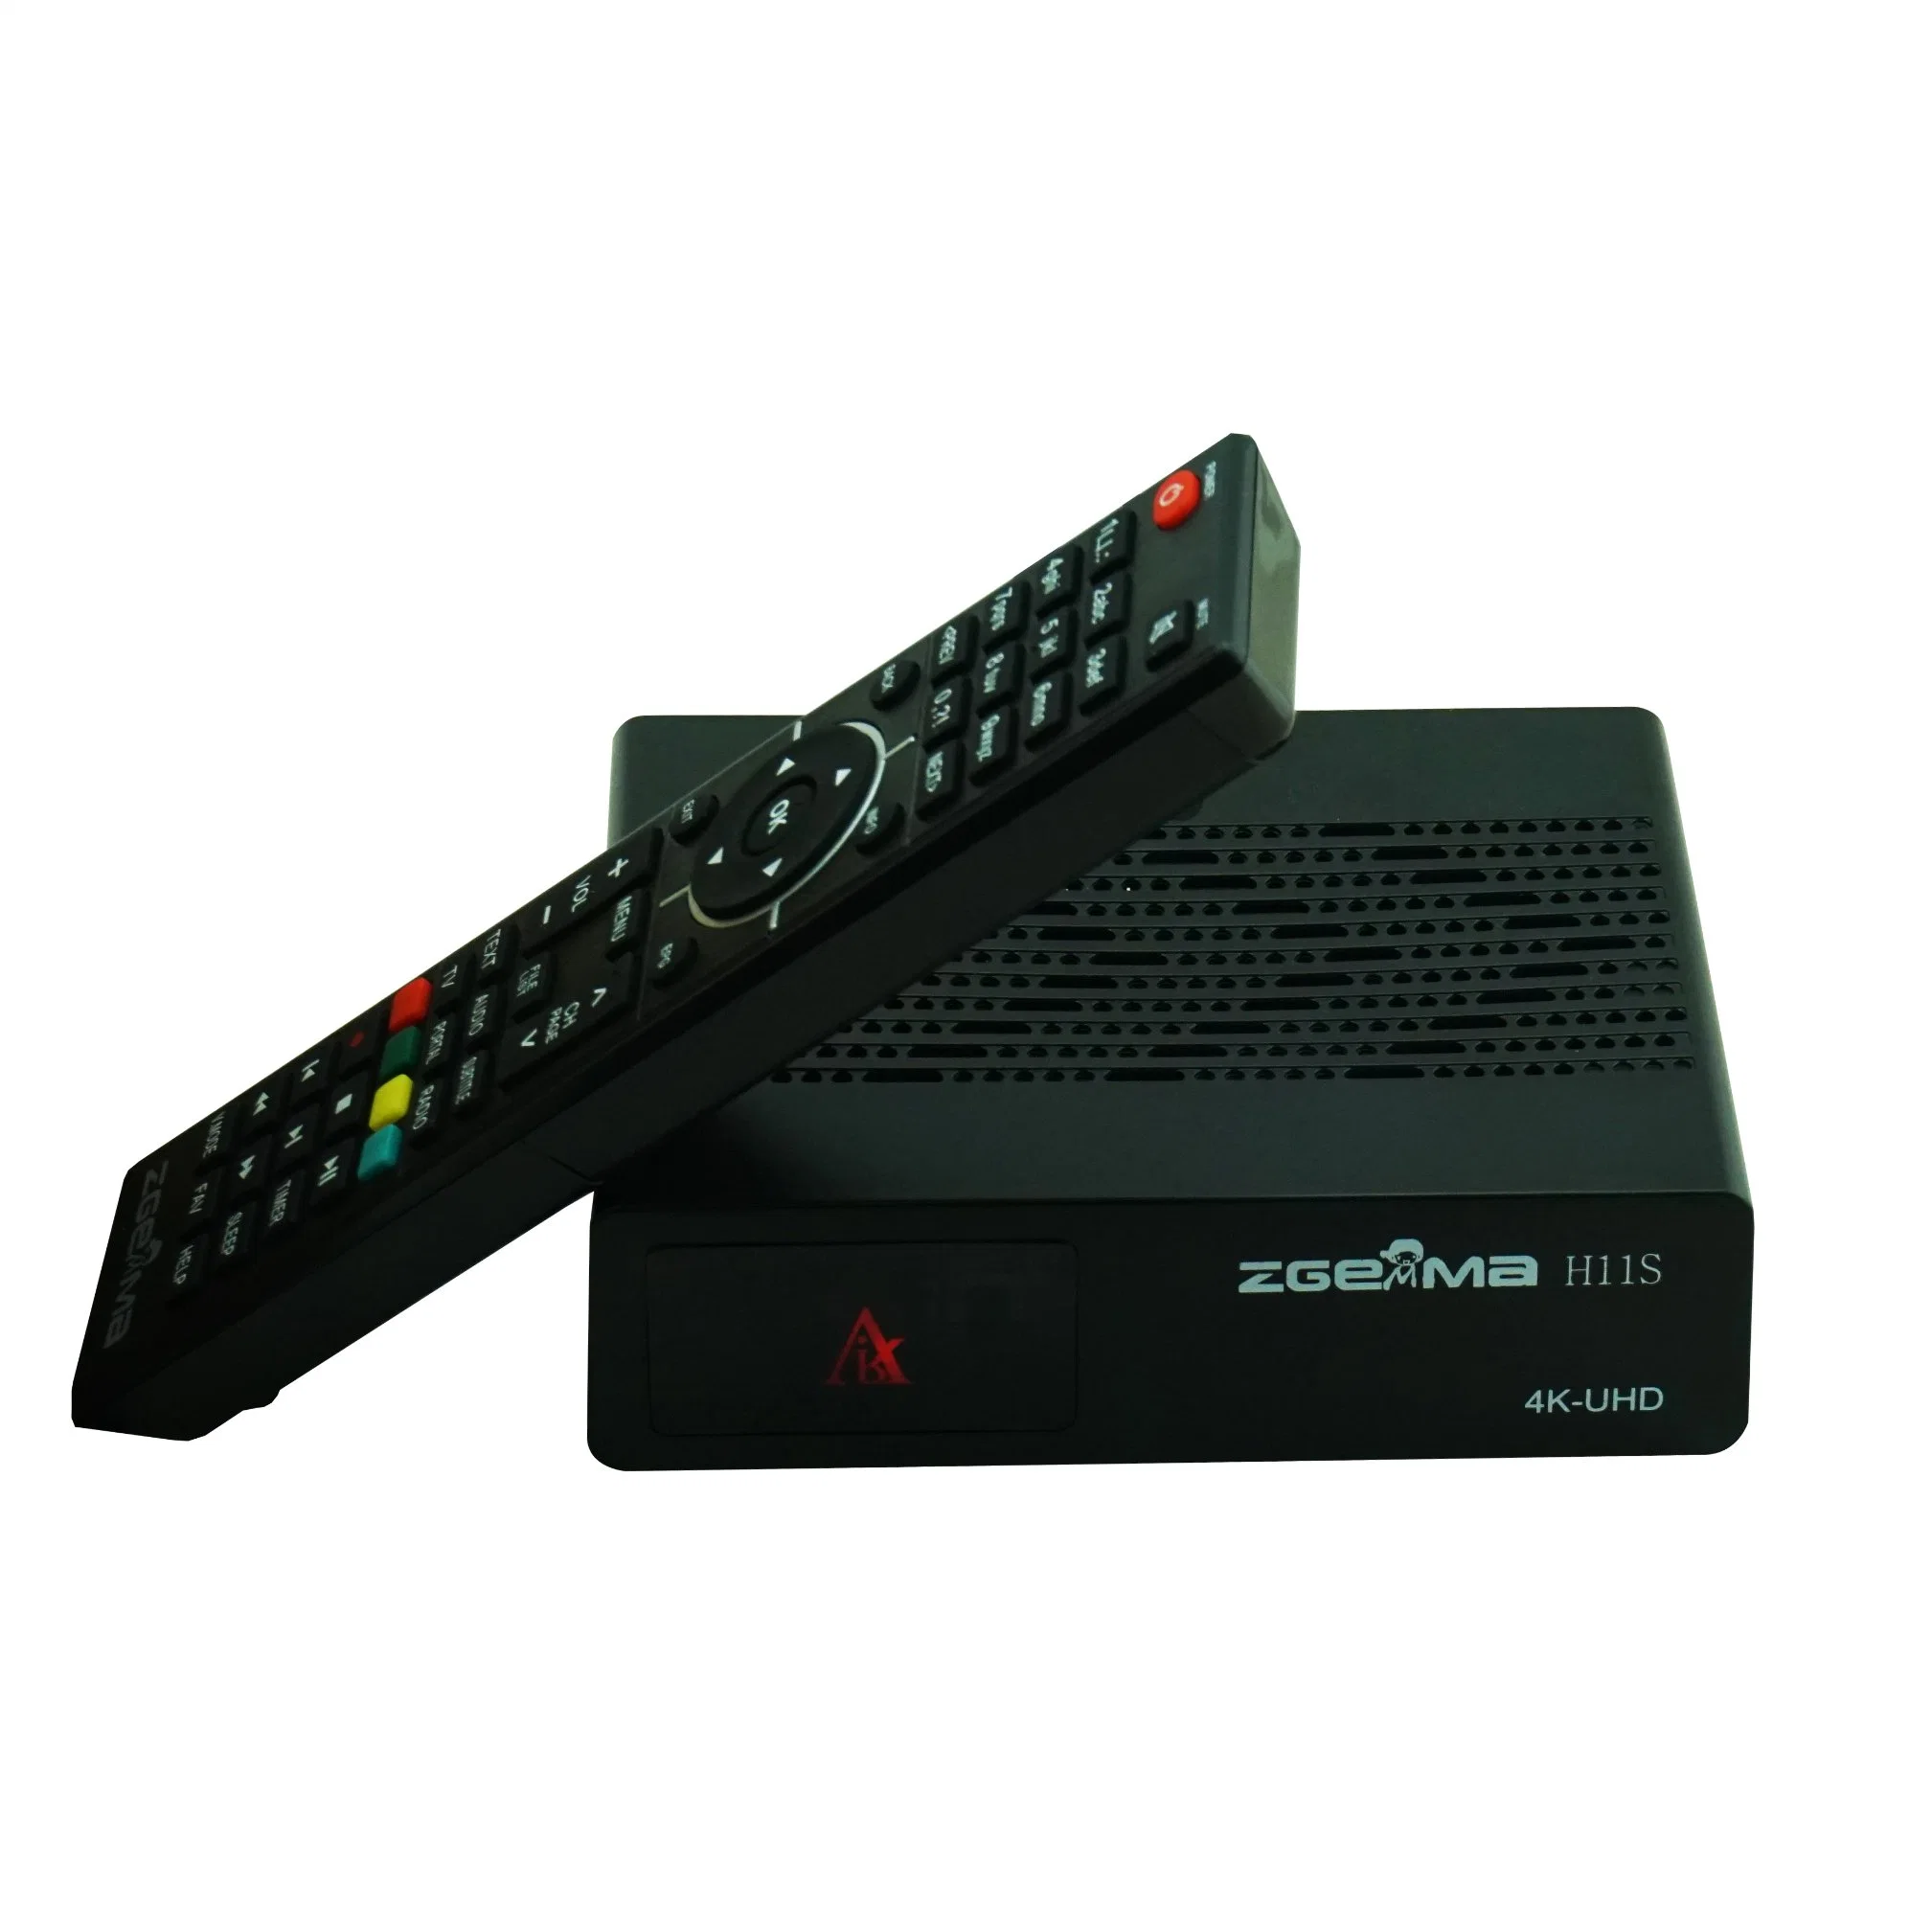 Спутниковый ресивер Zgemma H11s 4K UHD Linux DVB-S2X